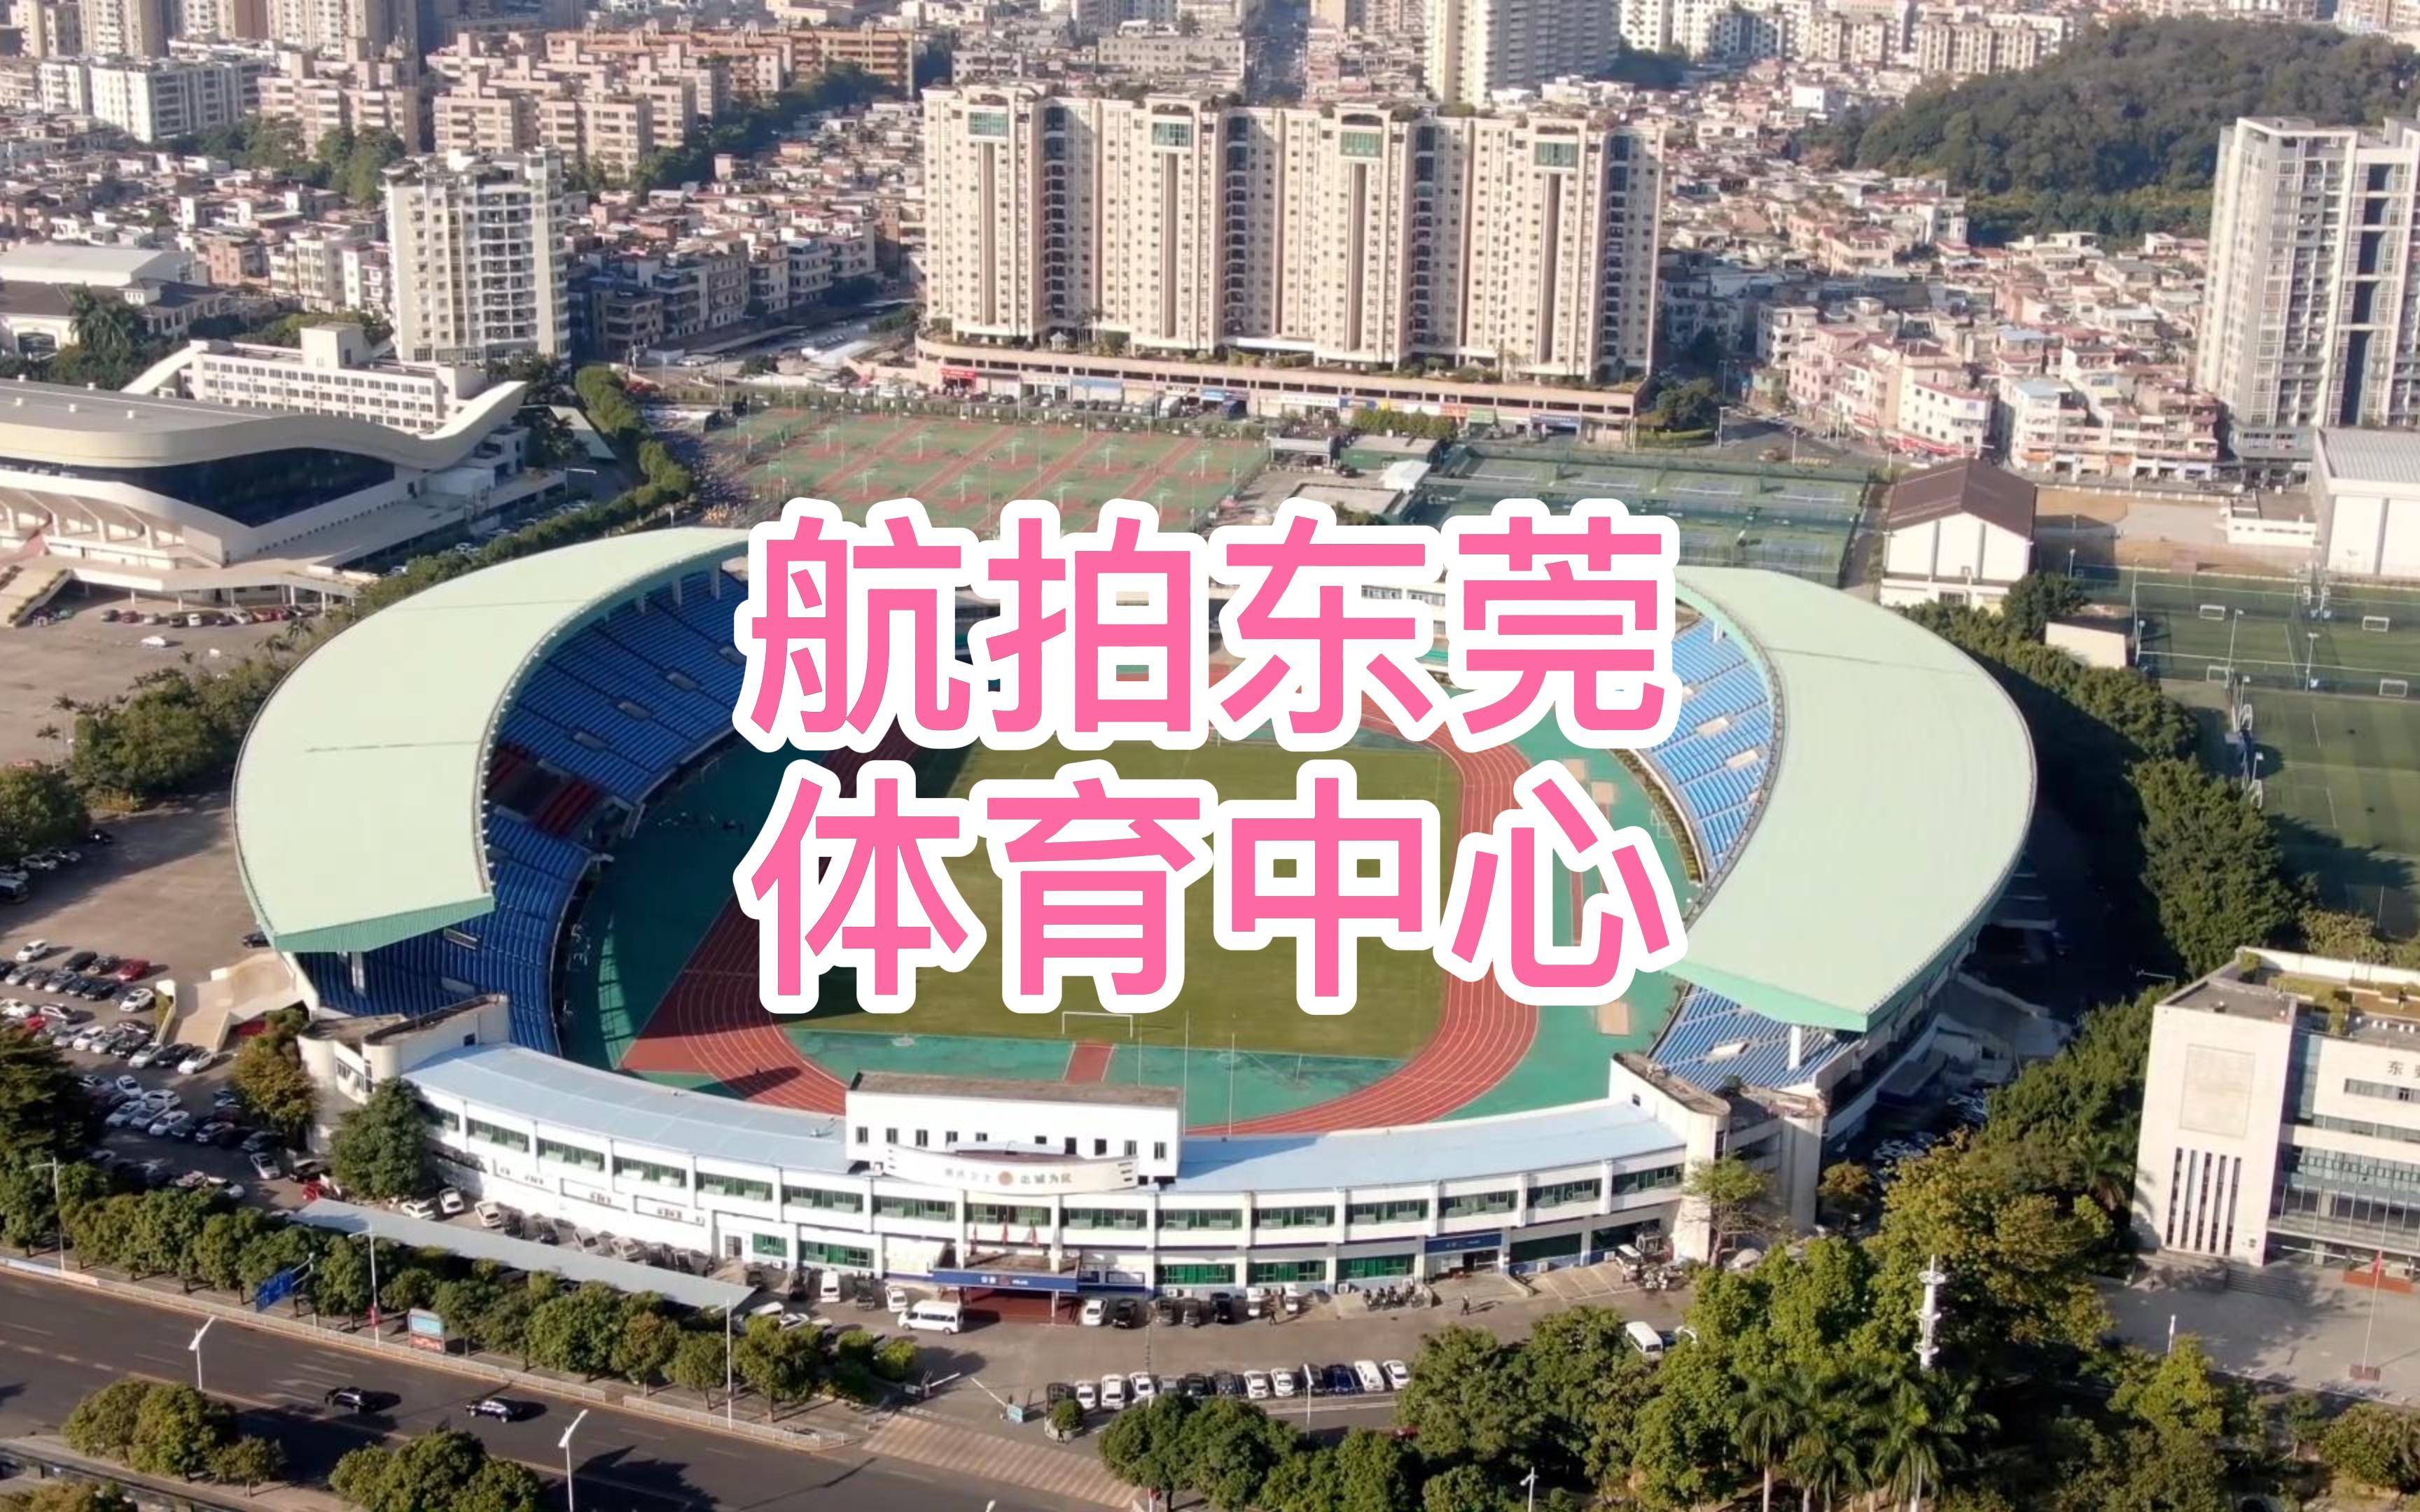 东莞市体育中心体育馆图片